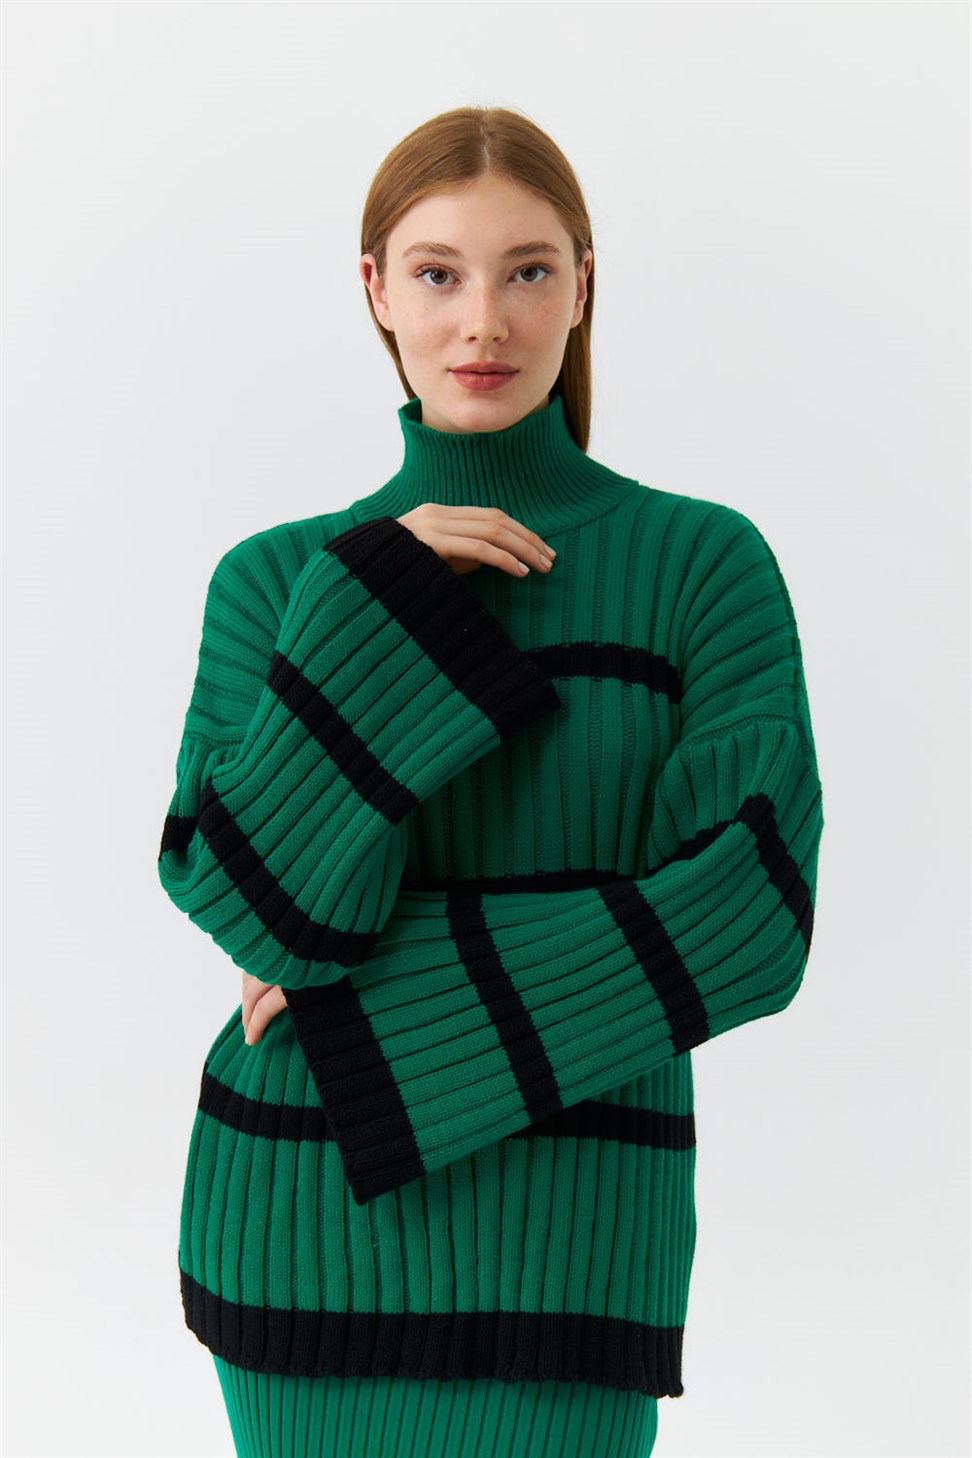 Half Turtleneck Striped Knitwear Green Womens Sweater